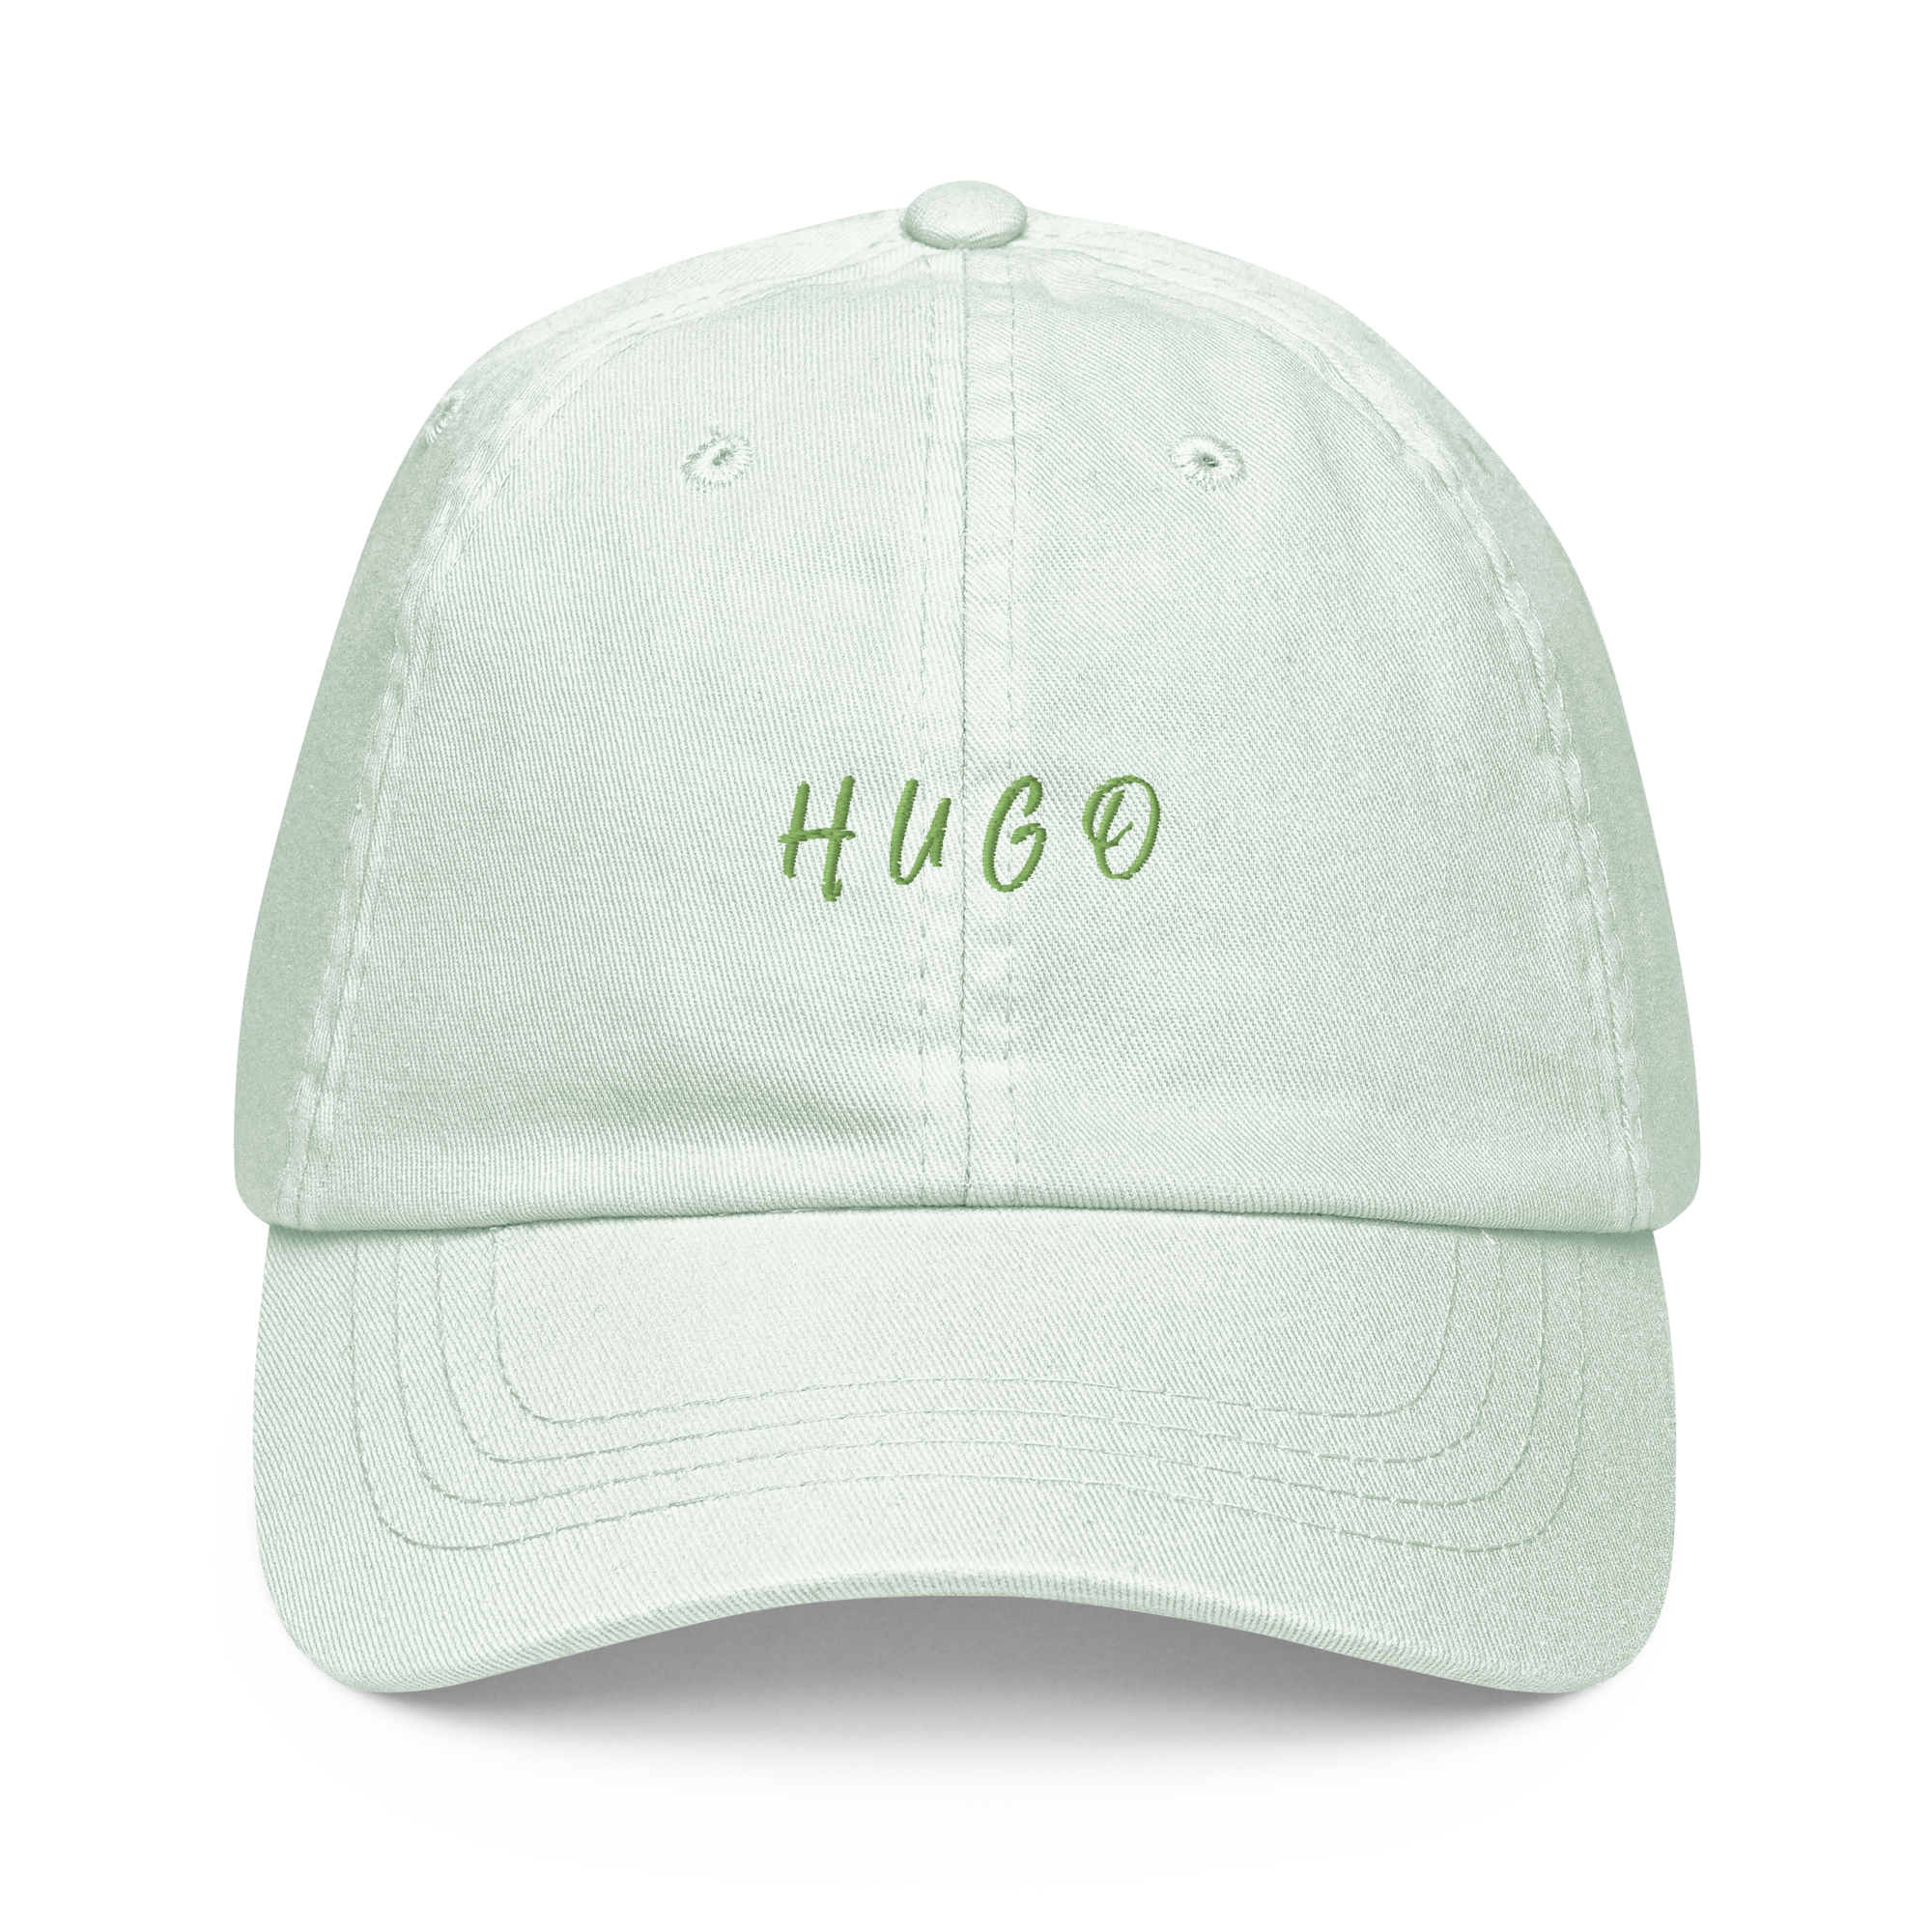 Hugo cap green